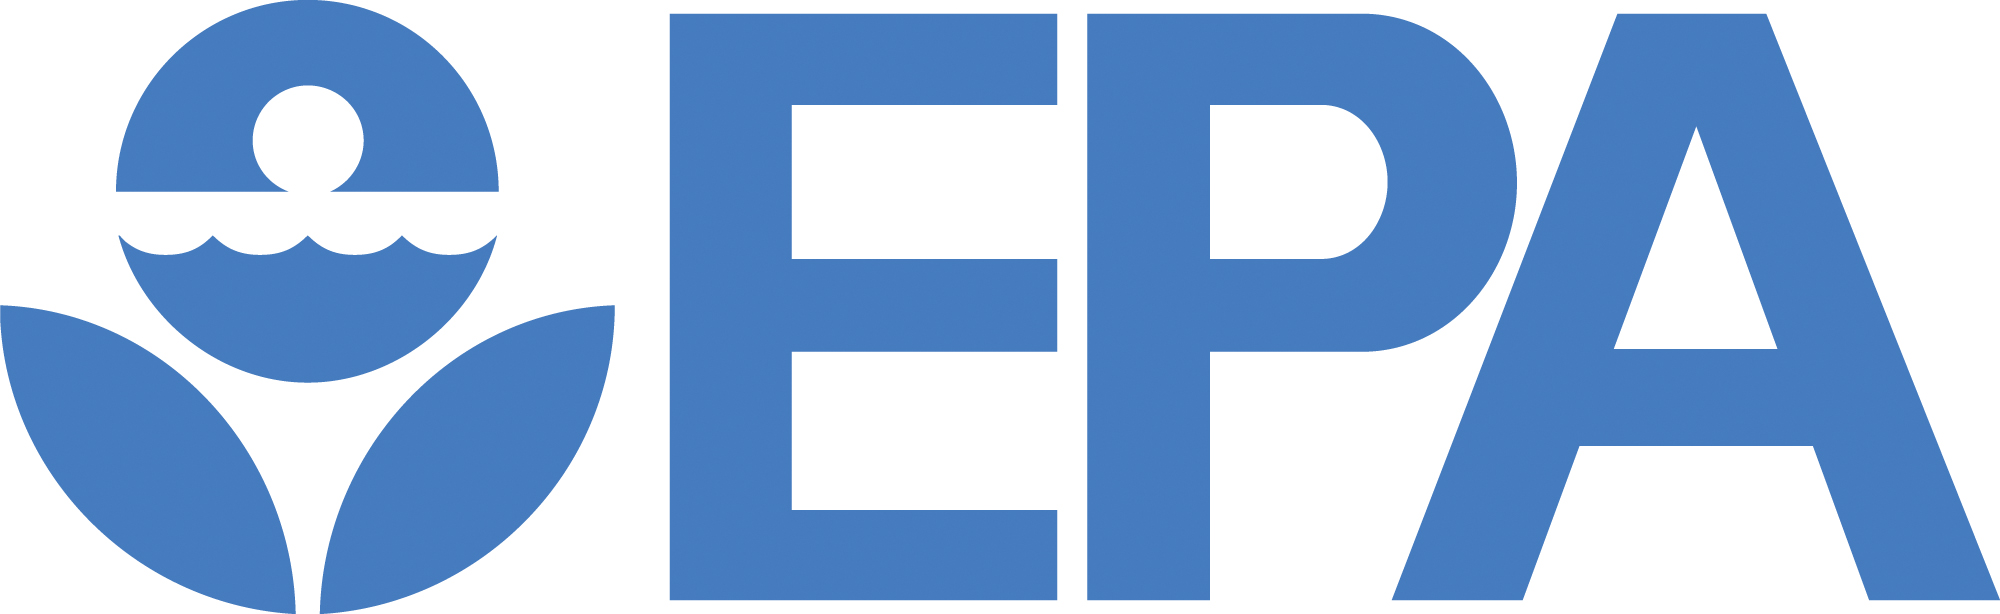 Blue EPA logo